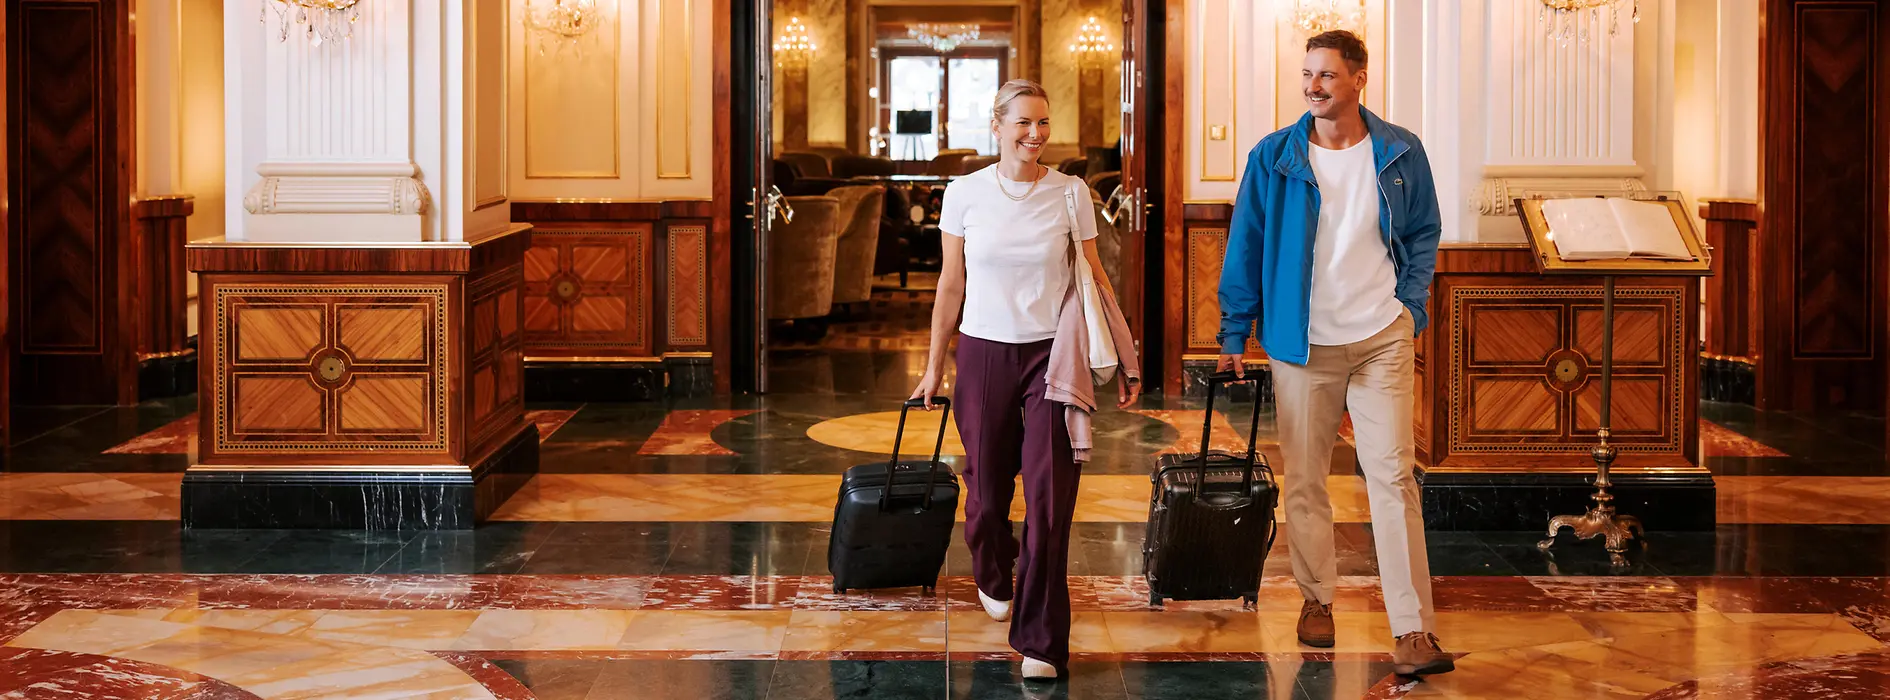 Dos mujeres con su equipaje en un hotel de Viena